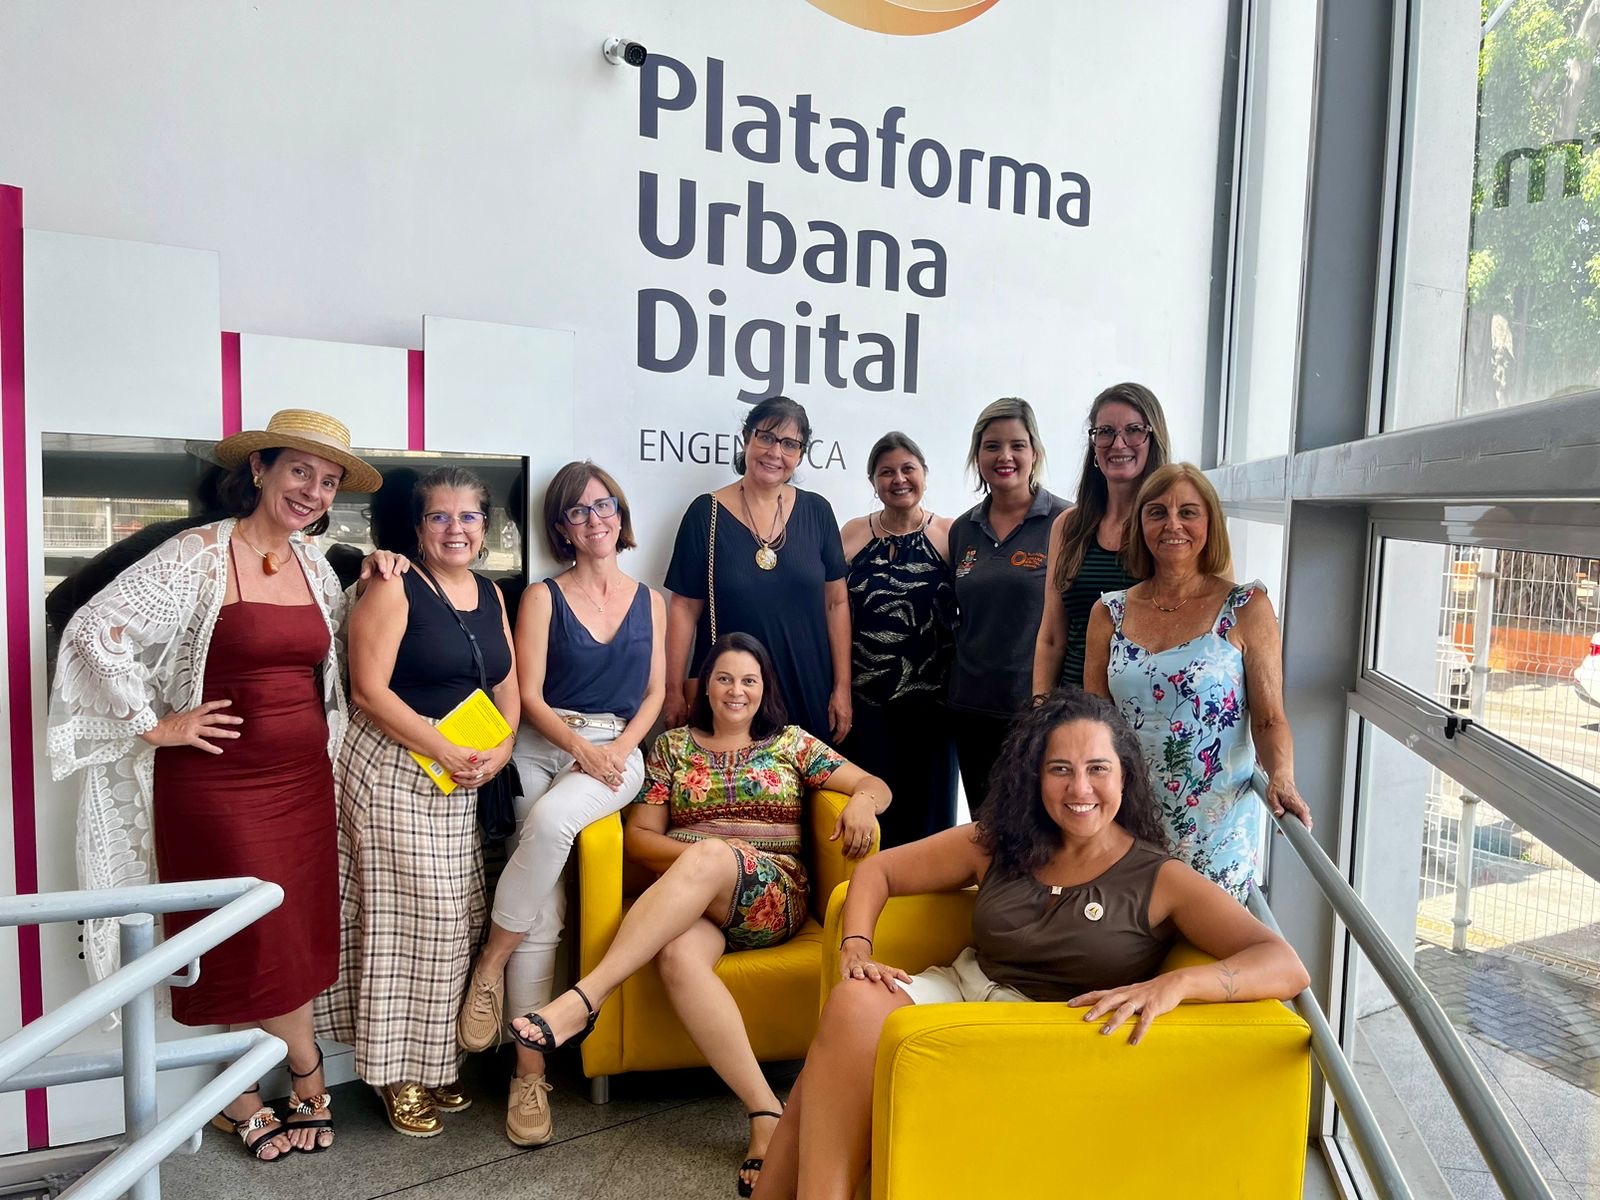 Reunião entre integrantes do Grupo Mulheres do Brasil - Núcleo Niterói, realizado nas dependências da Plataforma Urbana Digital, na Engenhoca.